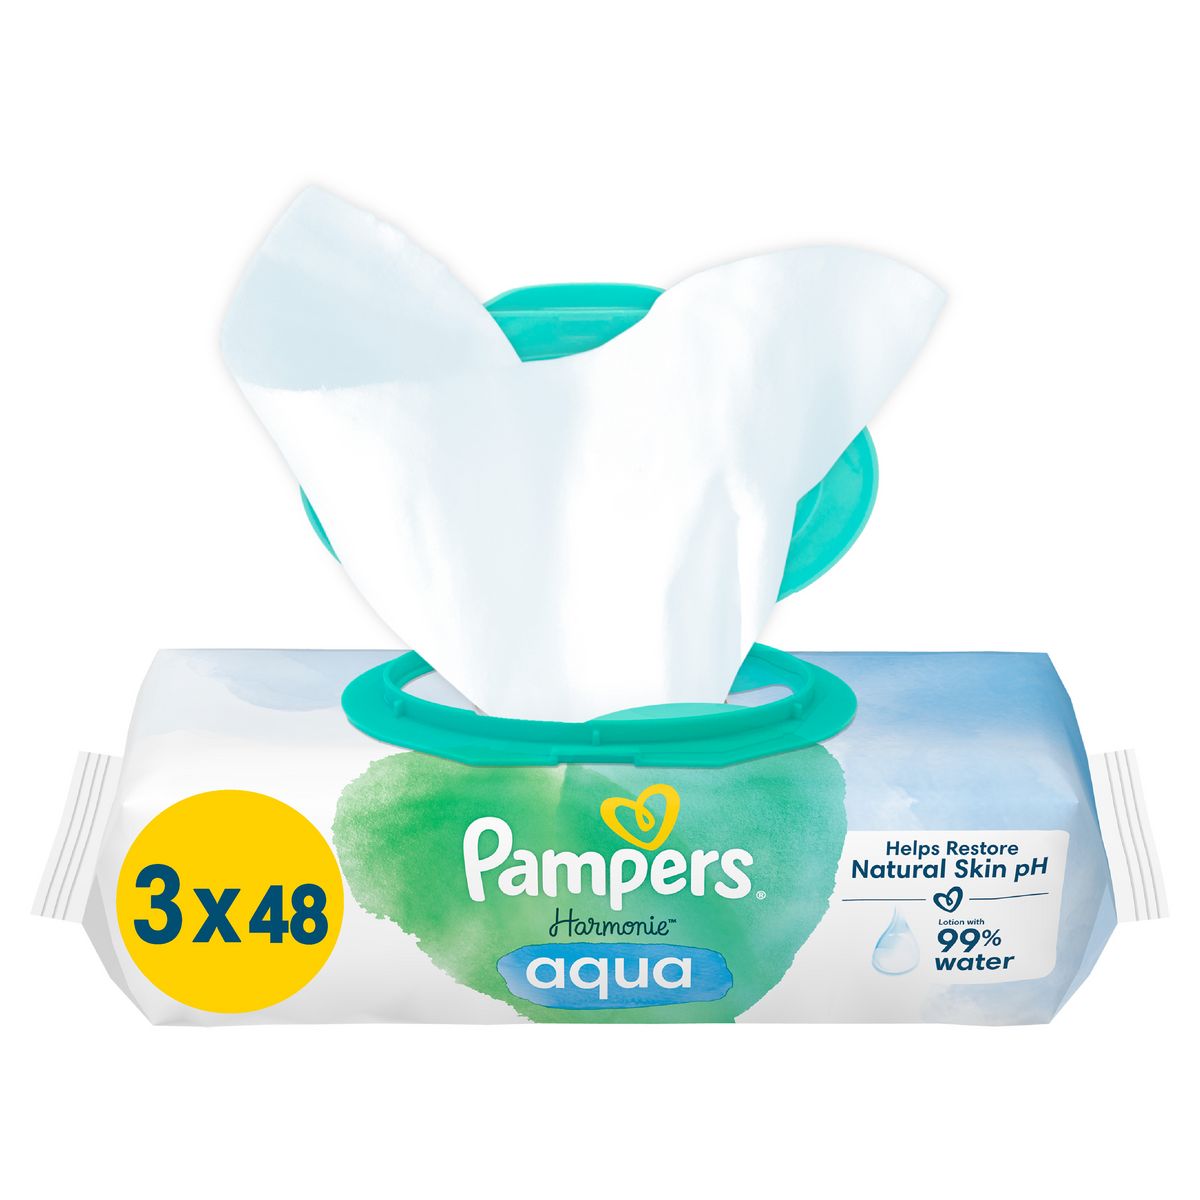 Achetez Pampers Harmonie Lingettes Aqua 3x48 lingettes à 5.55€ seulement ✓  Livraison GRATUITE dès 49€